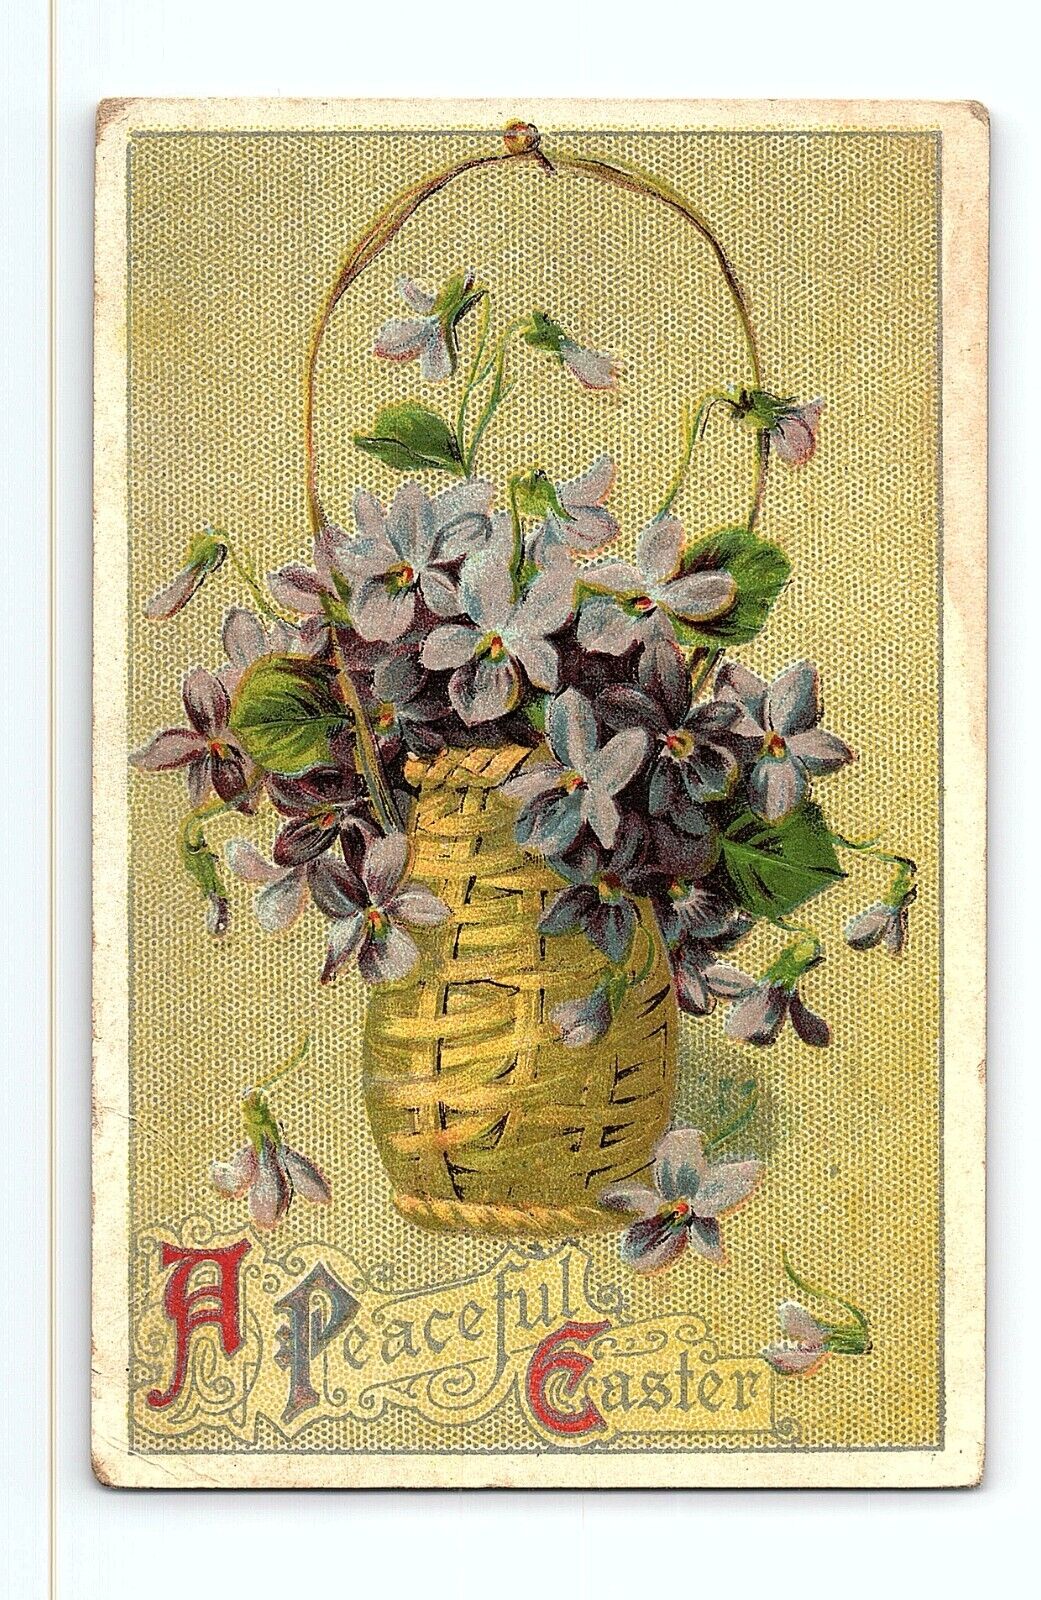 Violets Flowers Basket Floral Happy Easter Day Greeting Card Vintage Postcard